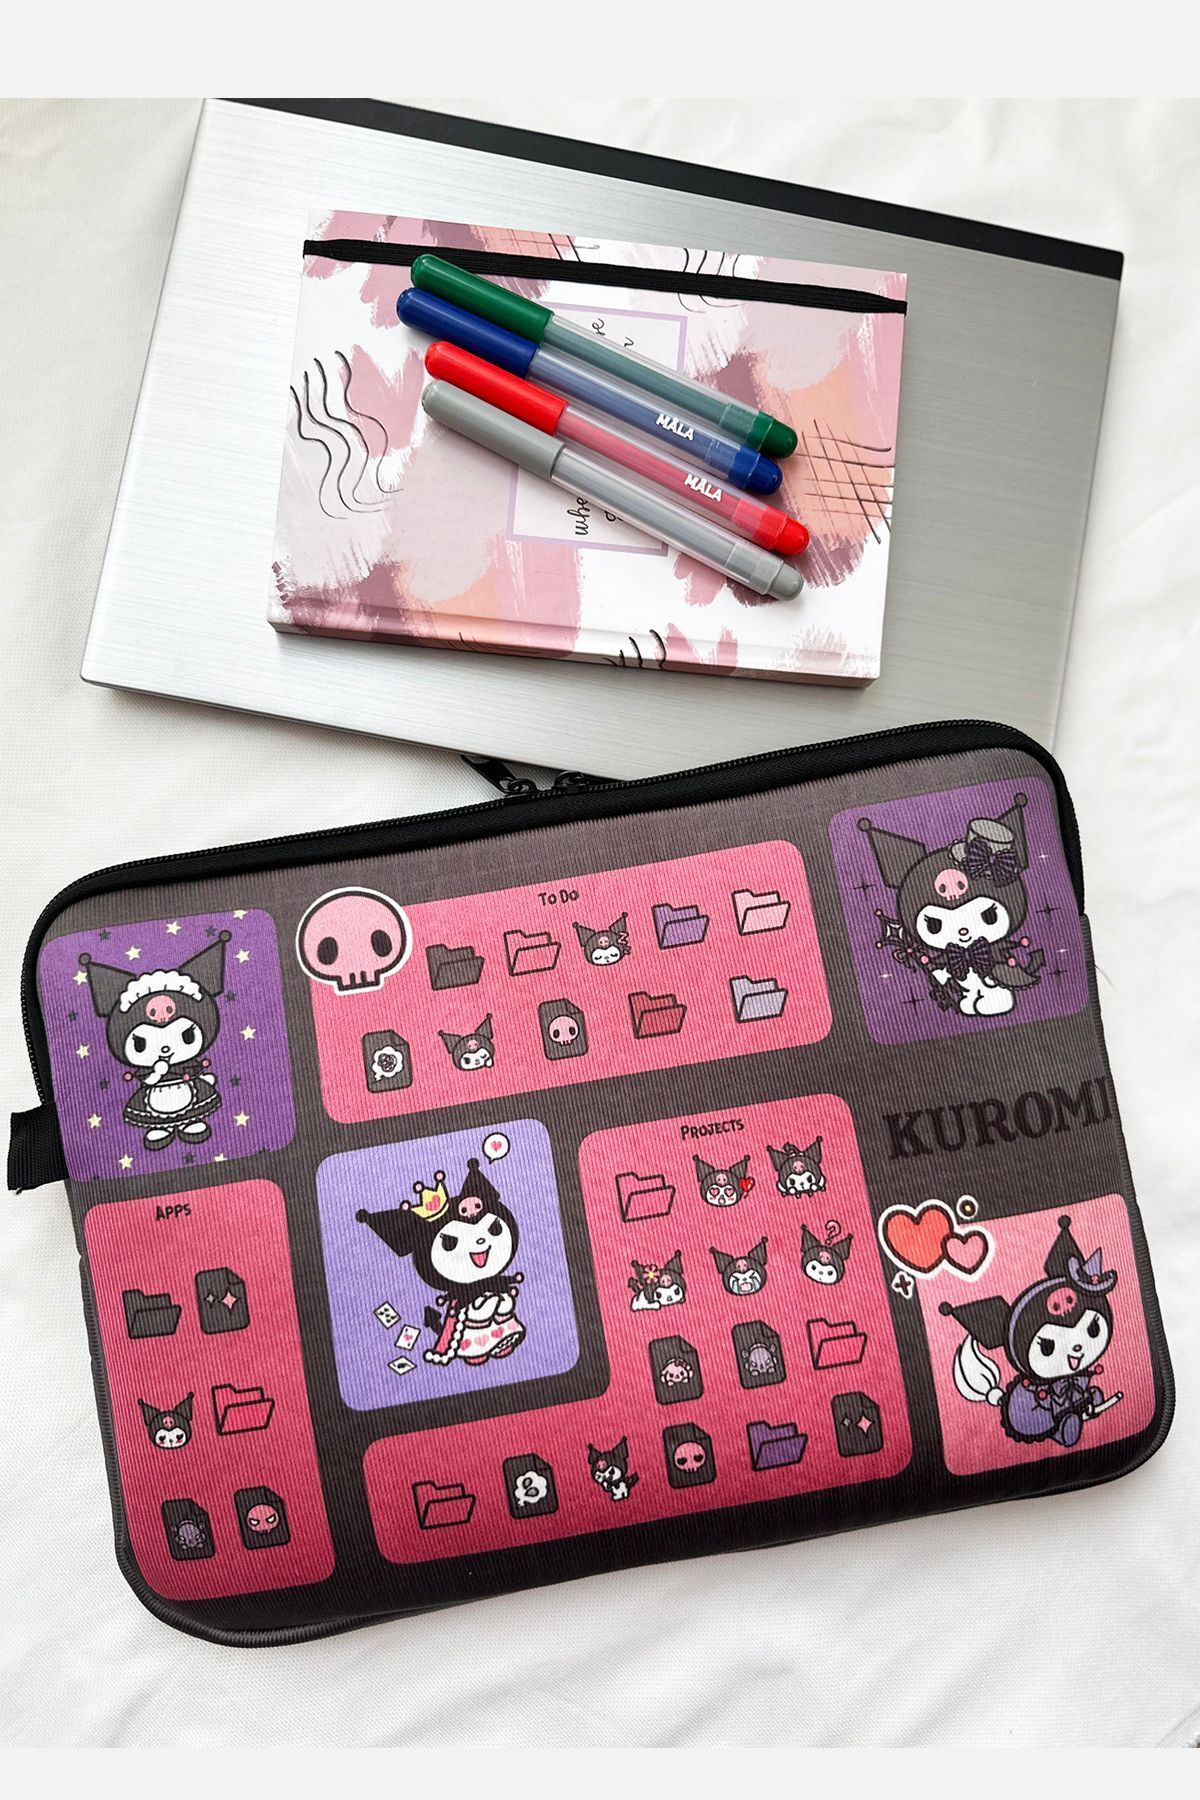 MODAZEY Kuromi Folder Desenli Tablet & Laptop Çantası